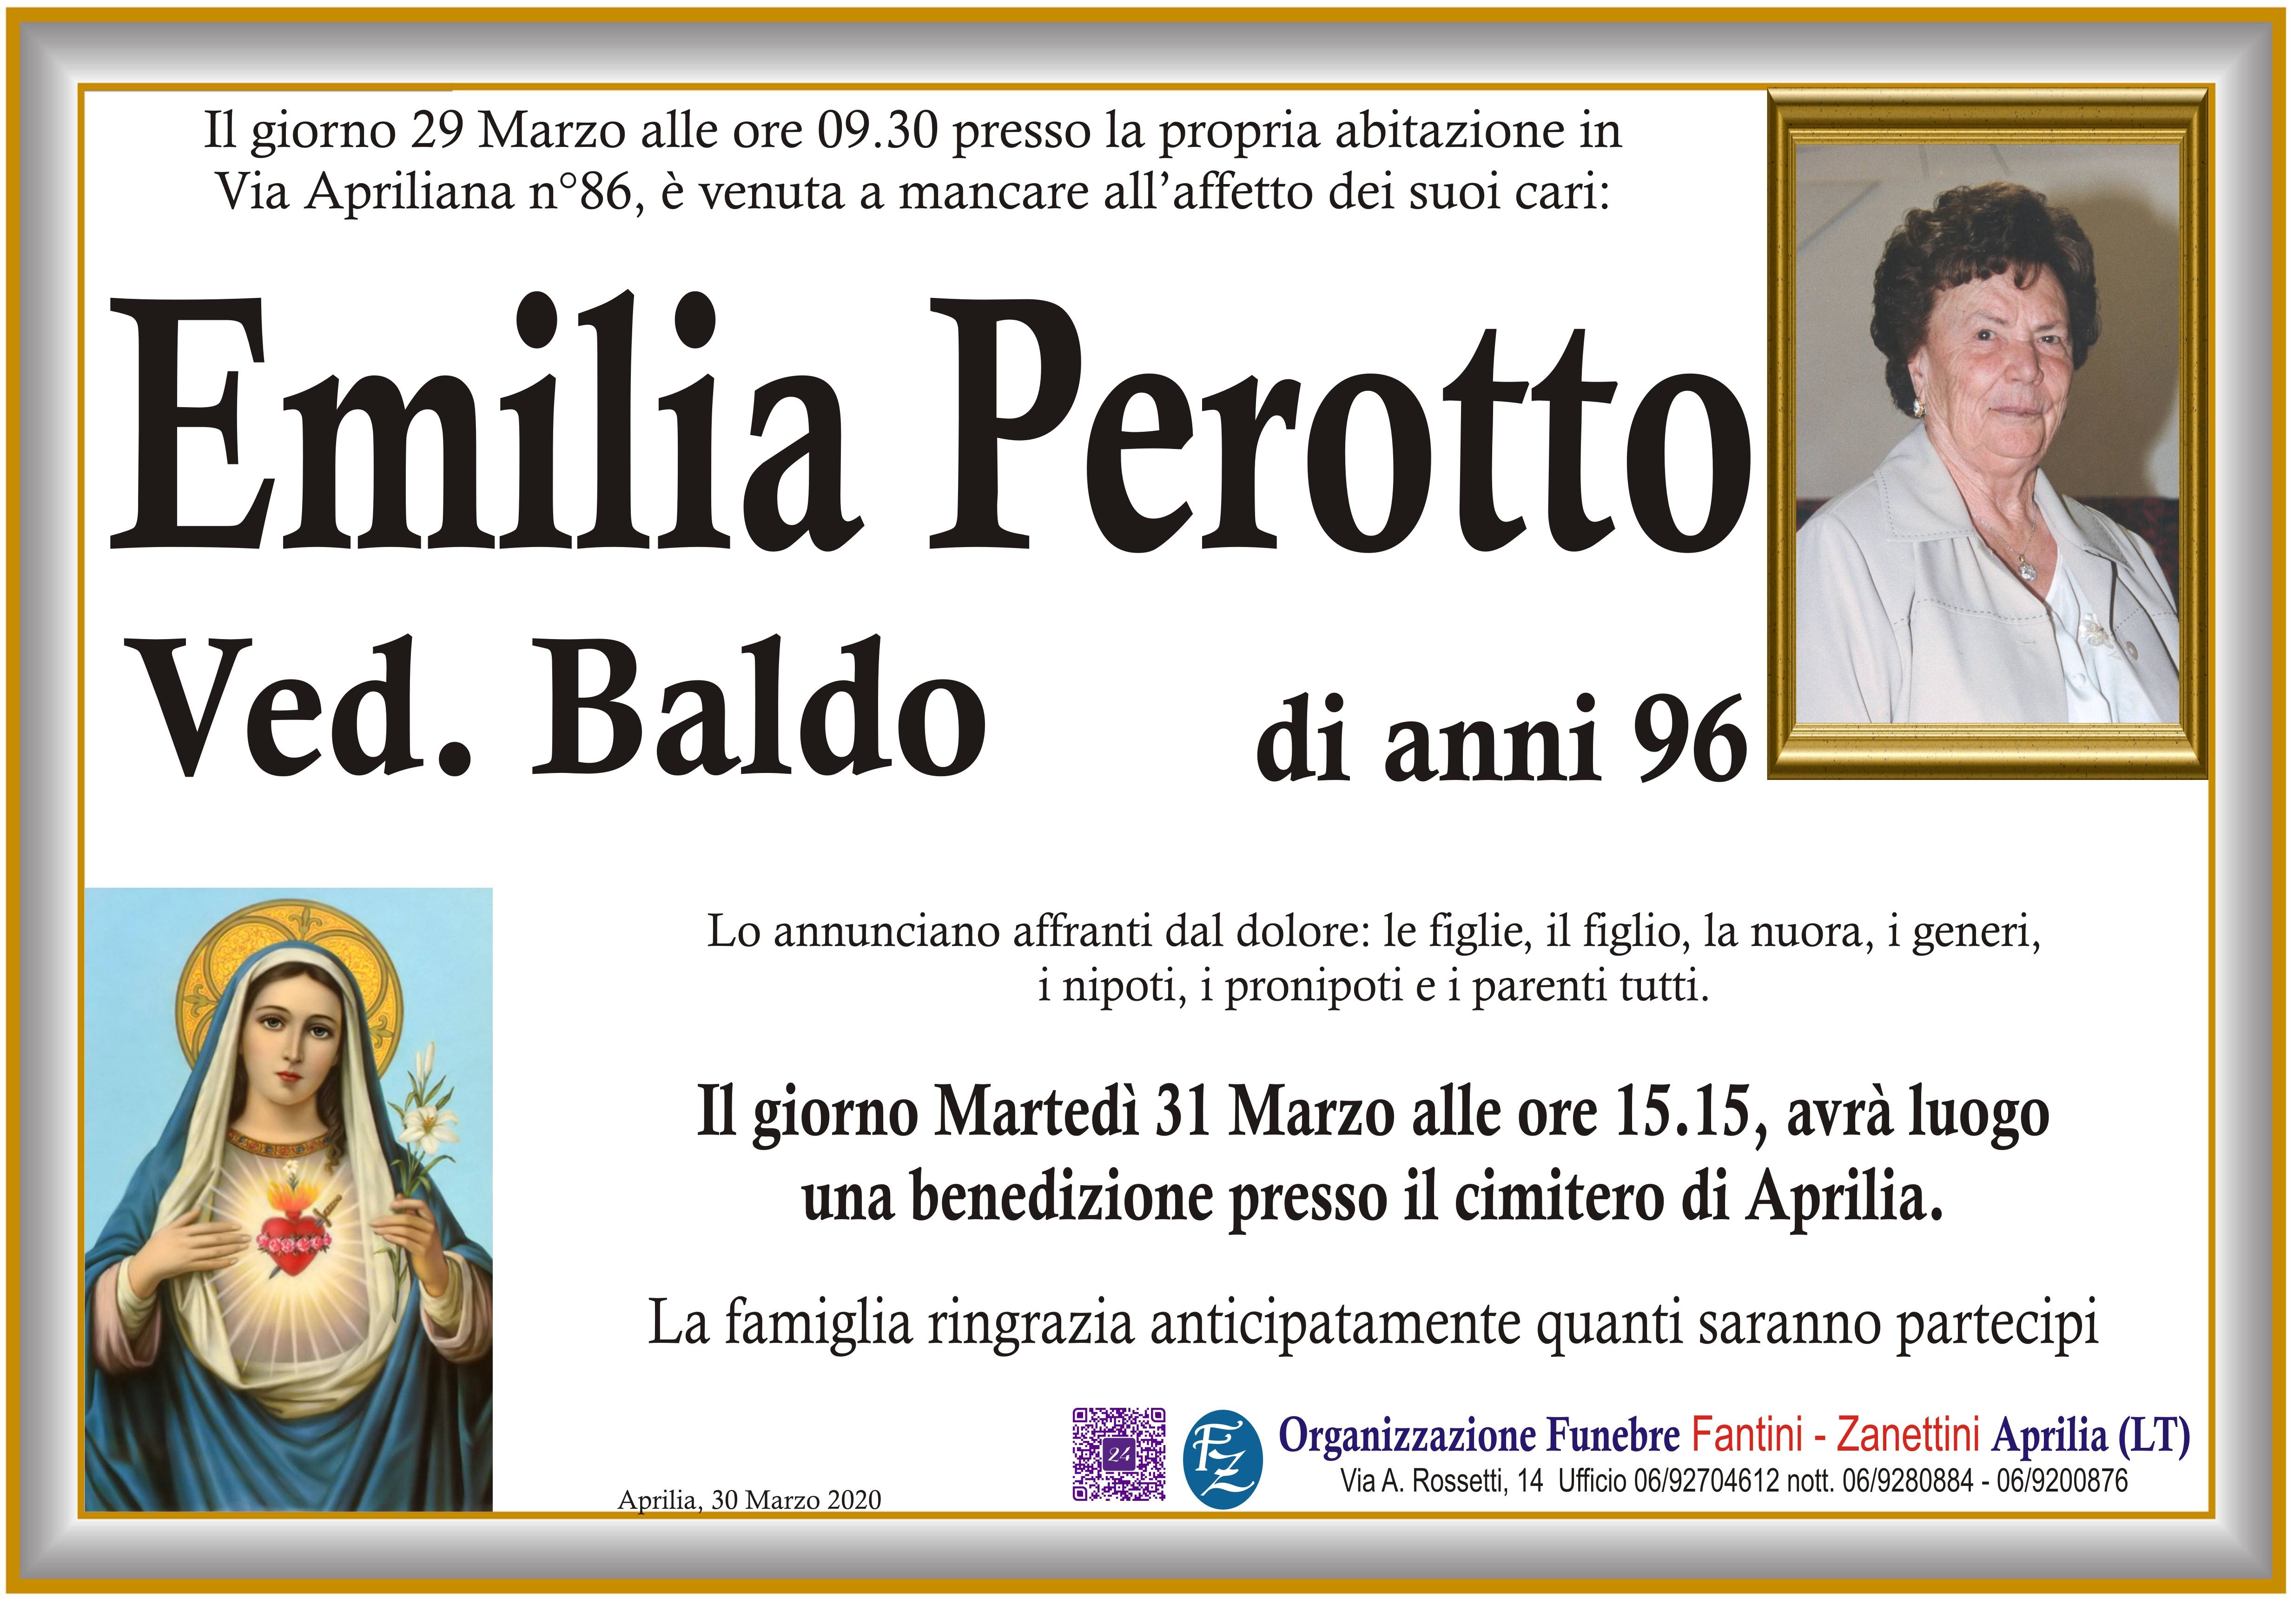 Emilia Perotto